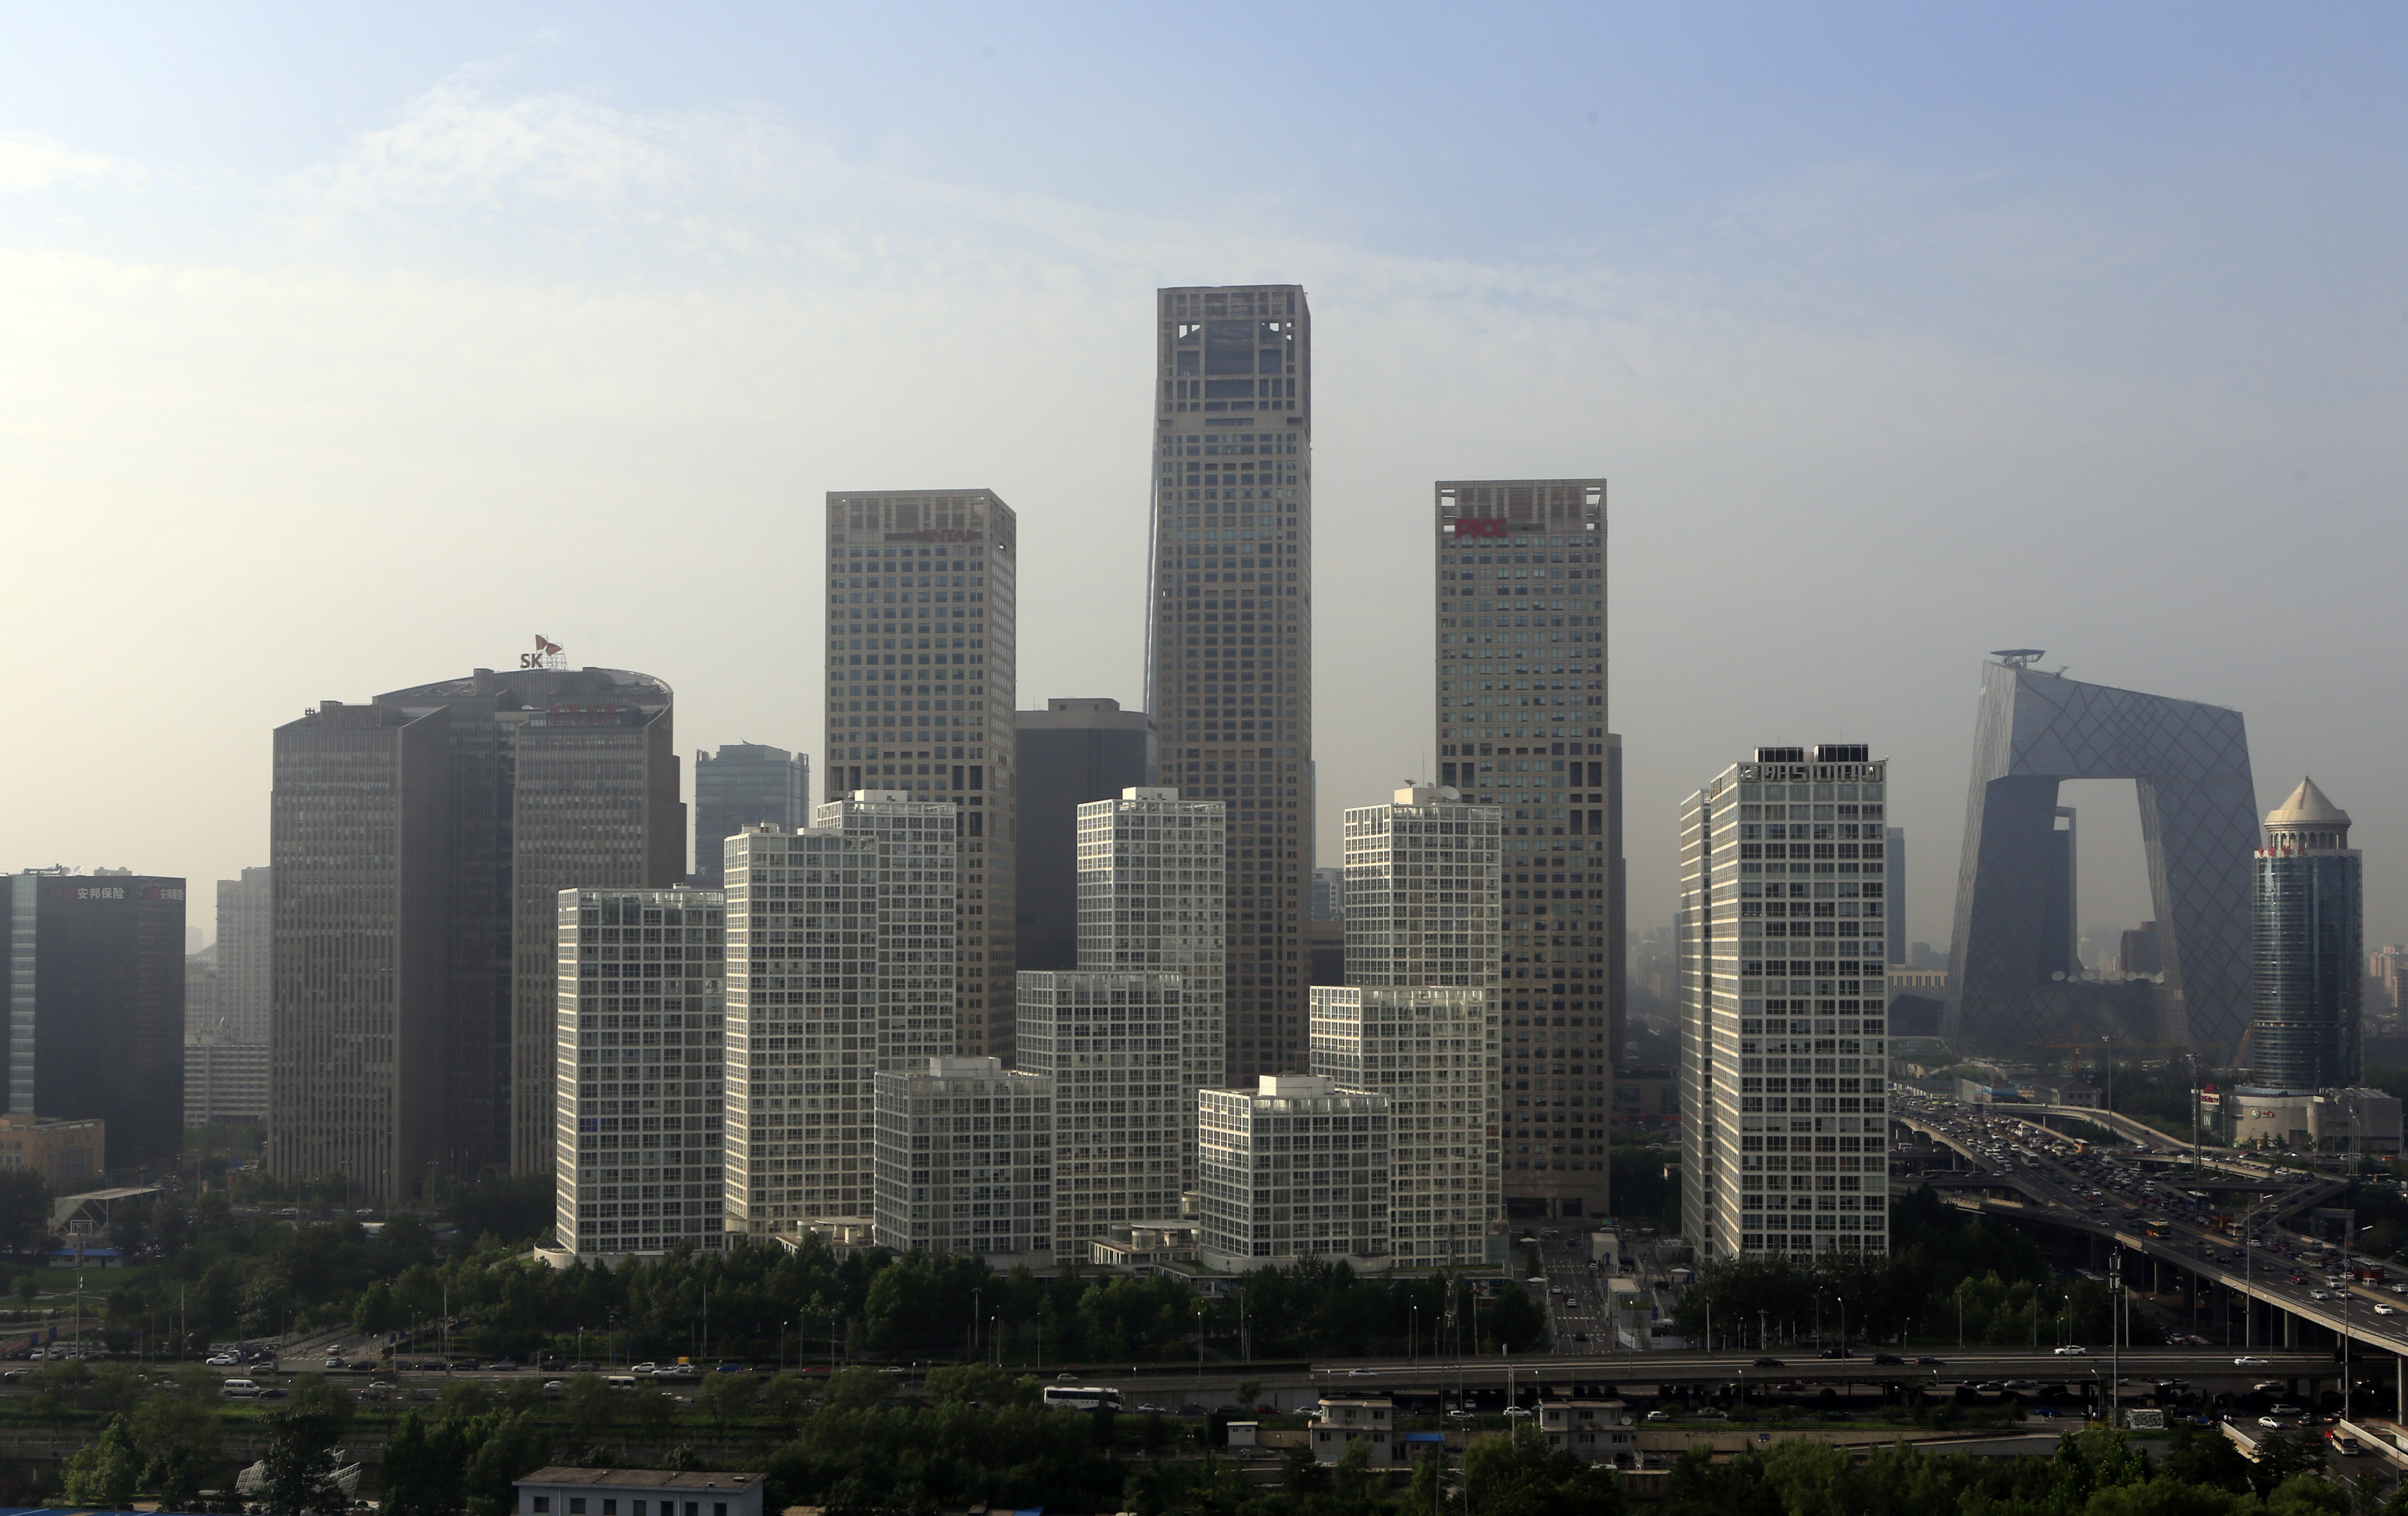 Beijing as a Globally Fluent City